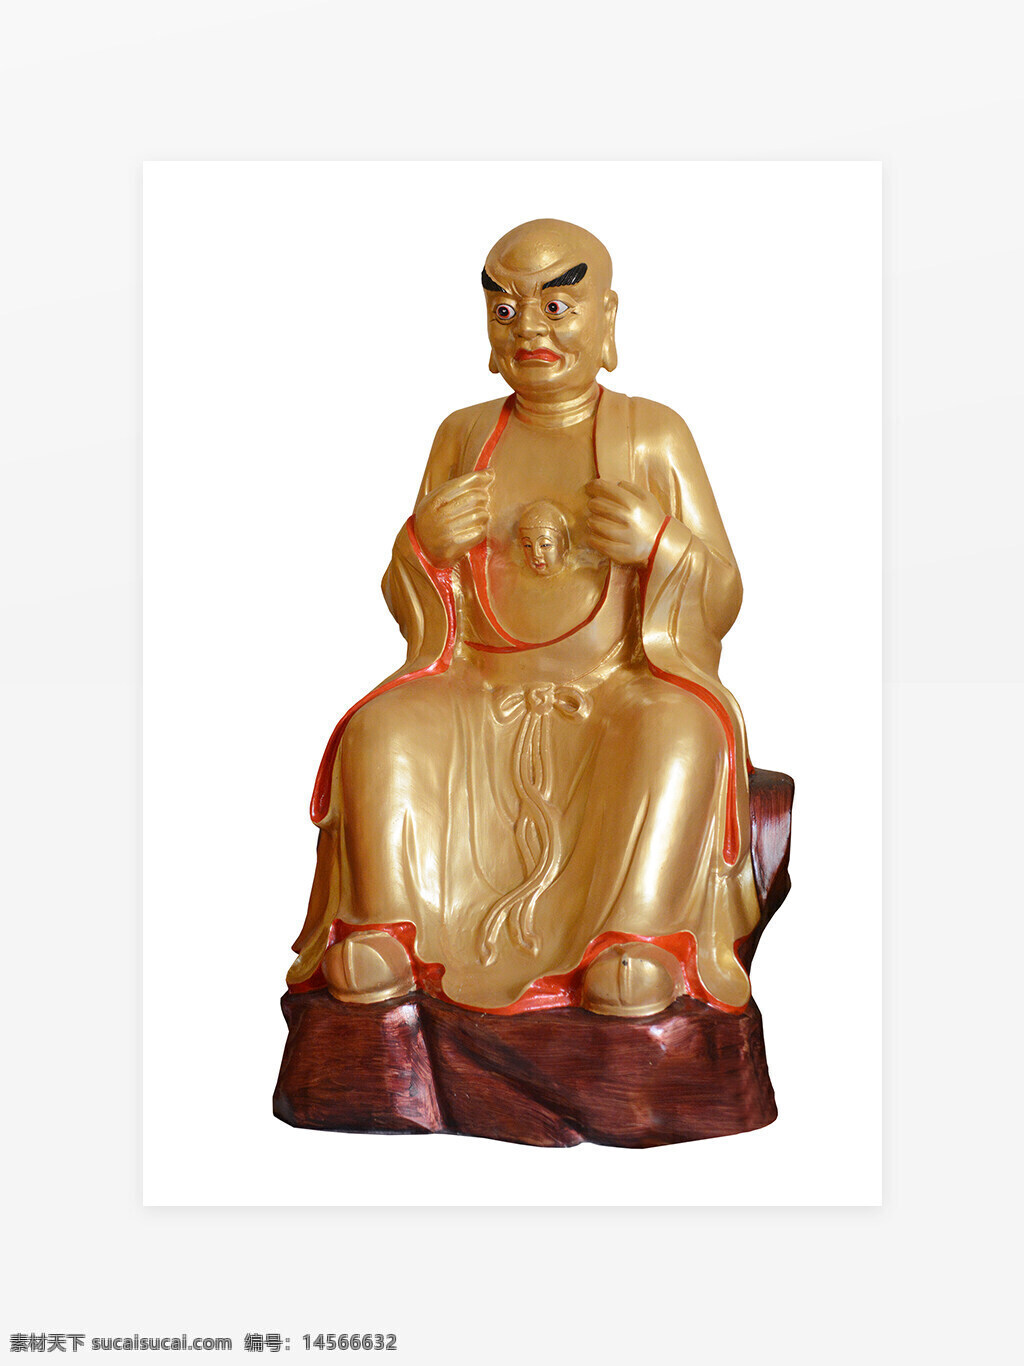 佛教人物元素 背景墙 罗汉 立体佛像 佛教 宗教 神话人物 宗教文化 佛教文化